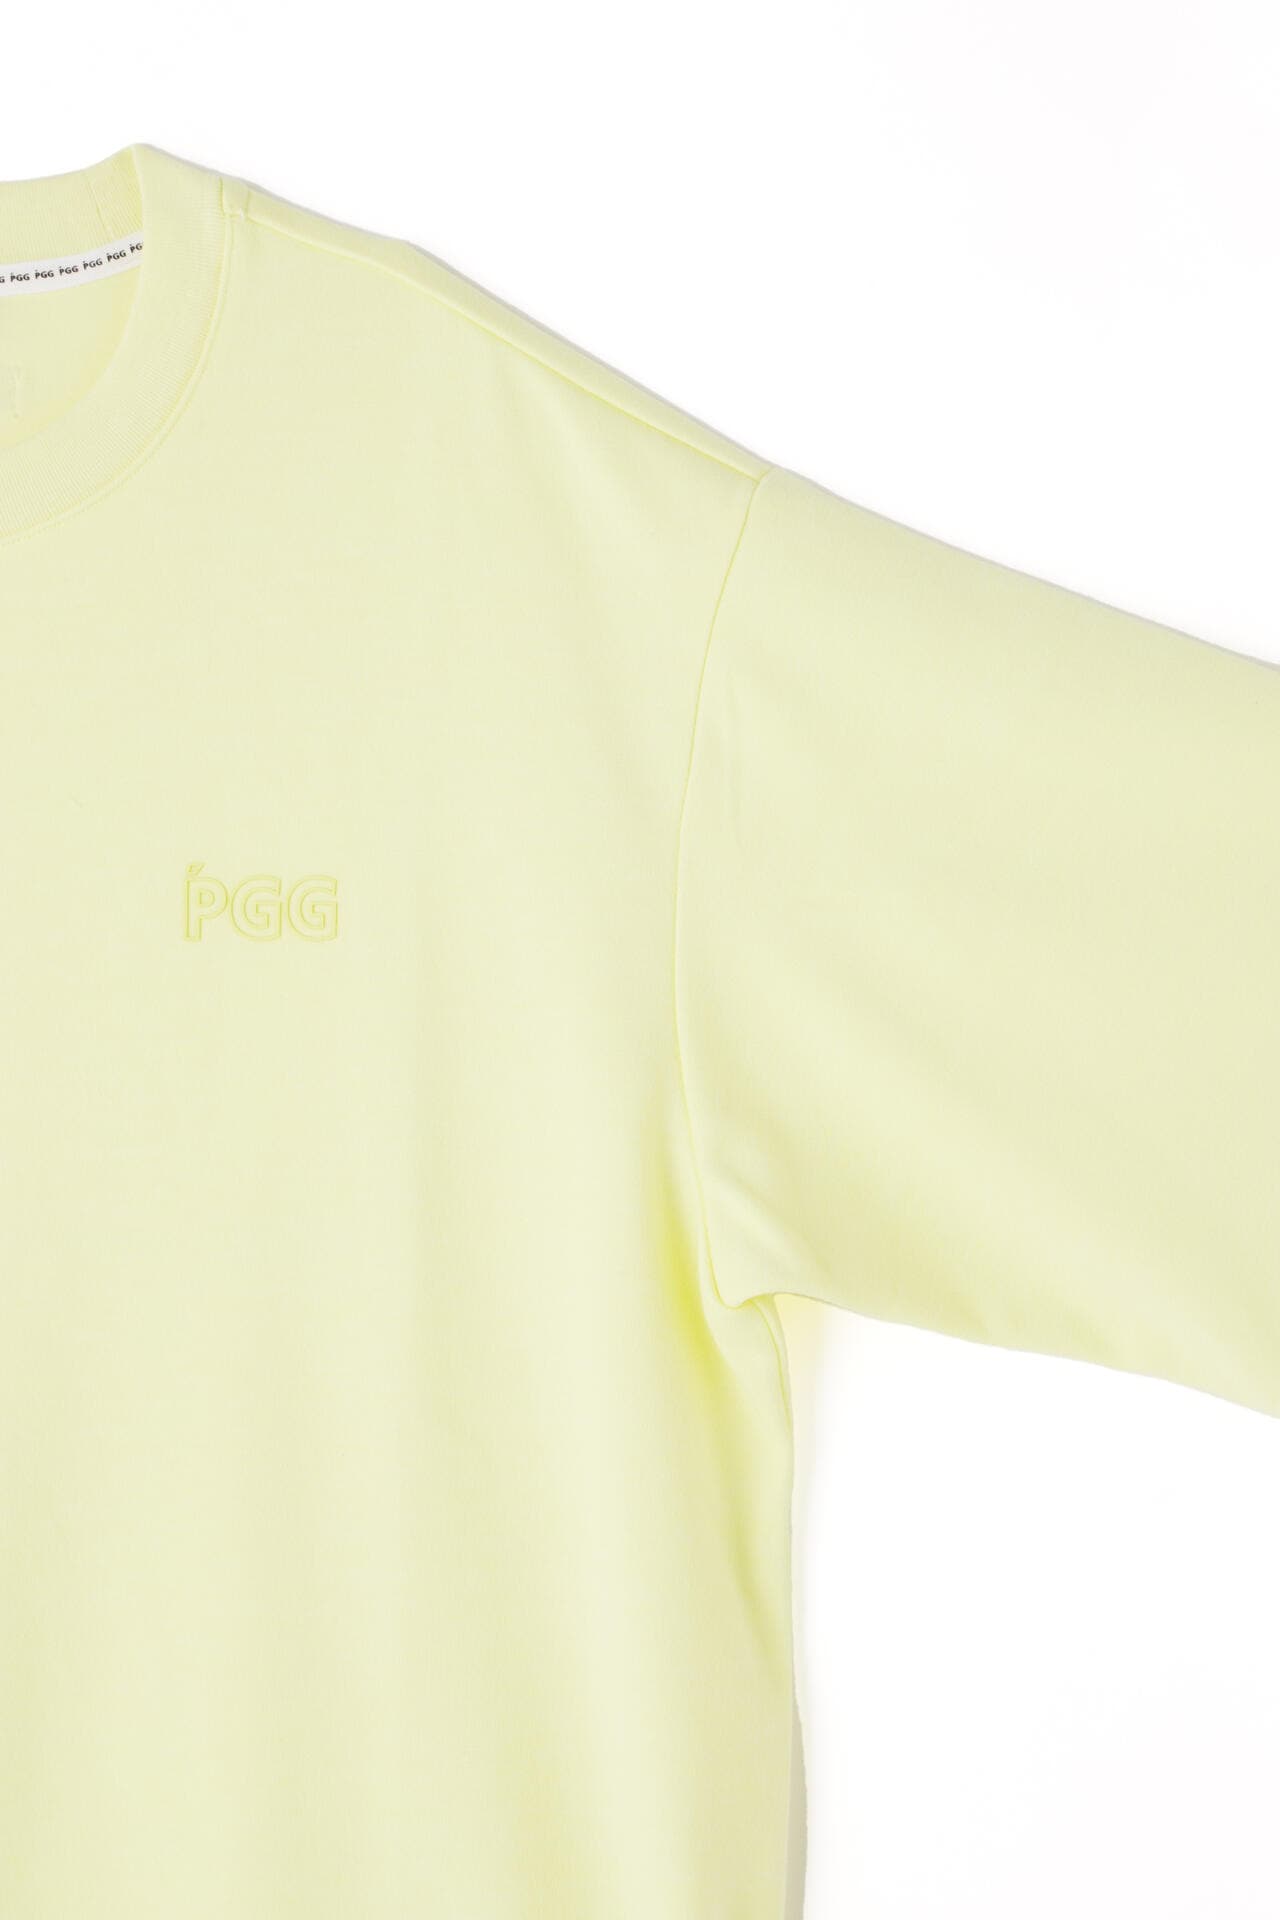 ピージージー】【PGG】【PERFECT】パルパーエコ×ハイグラ 半袖Tシャツ 